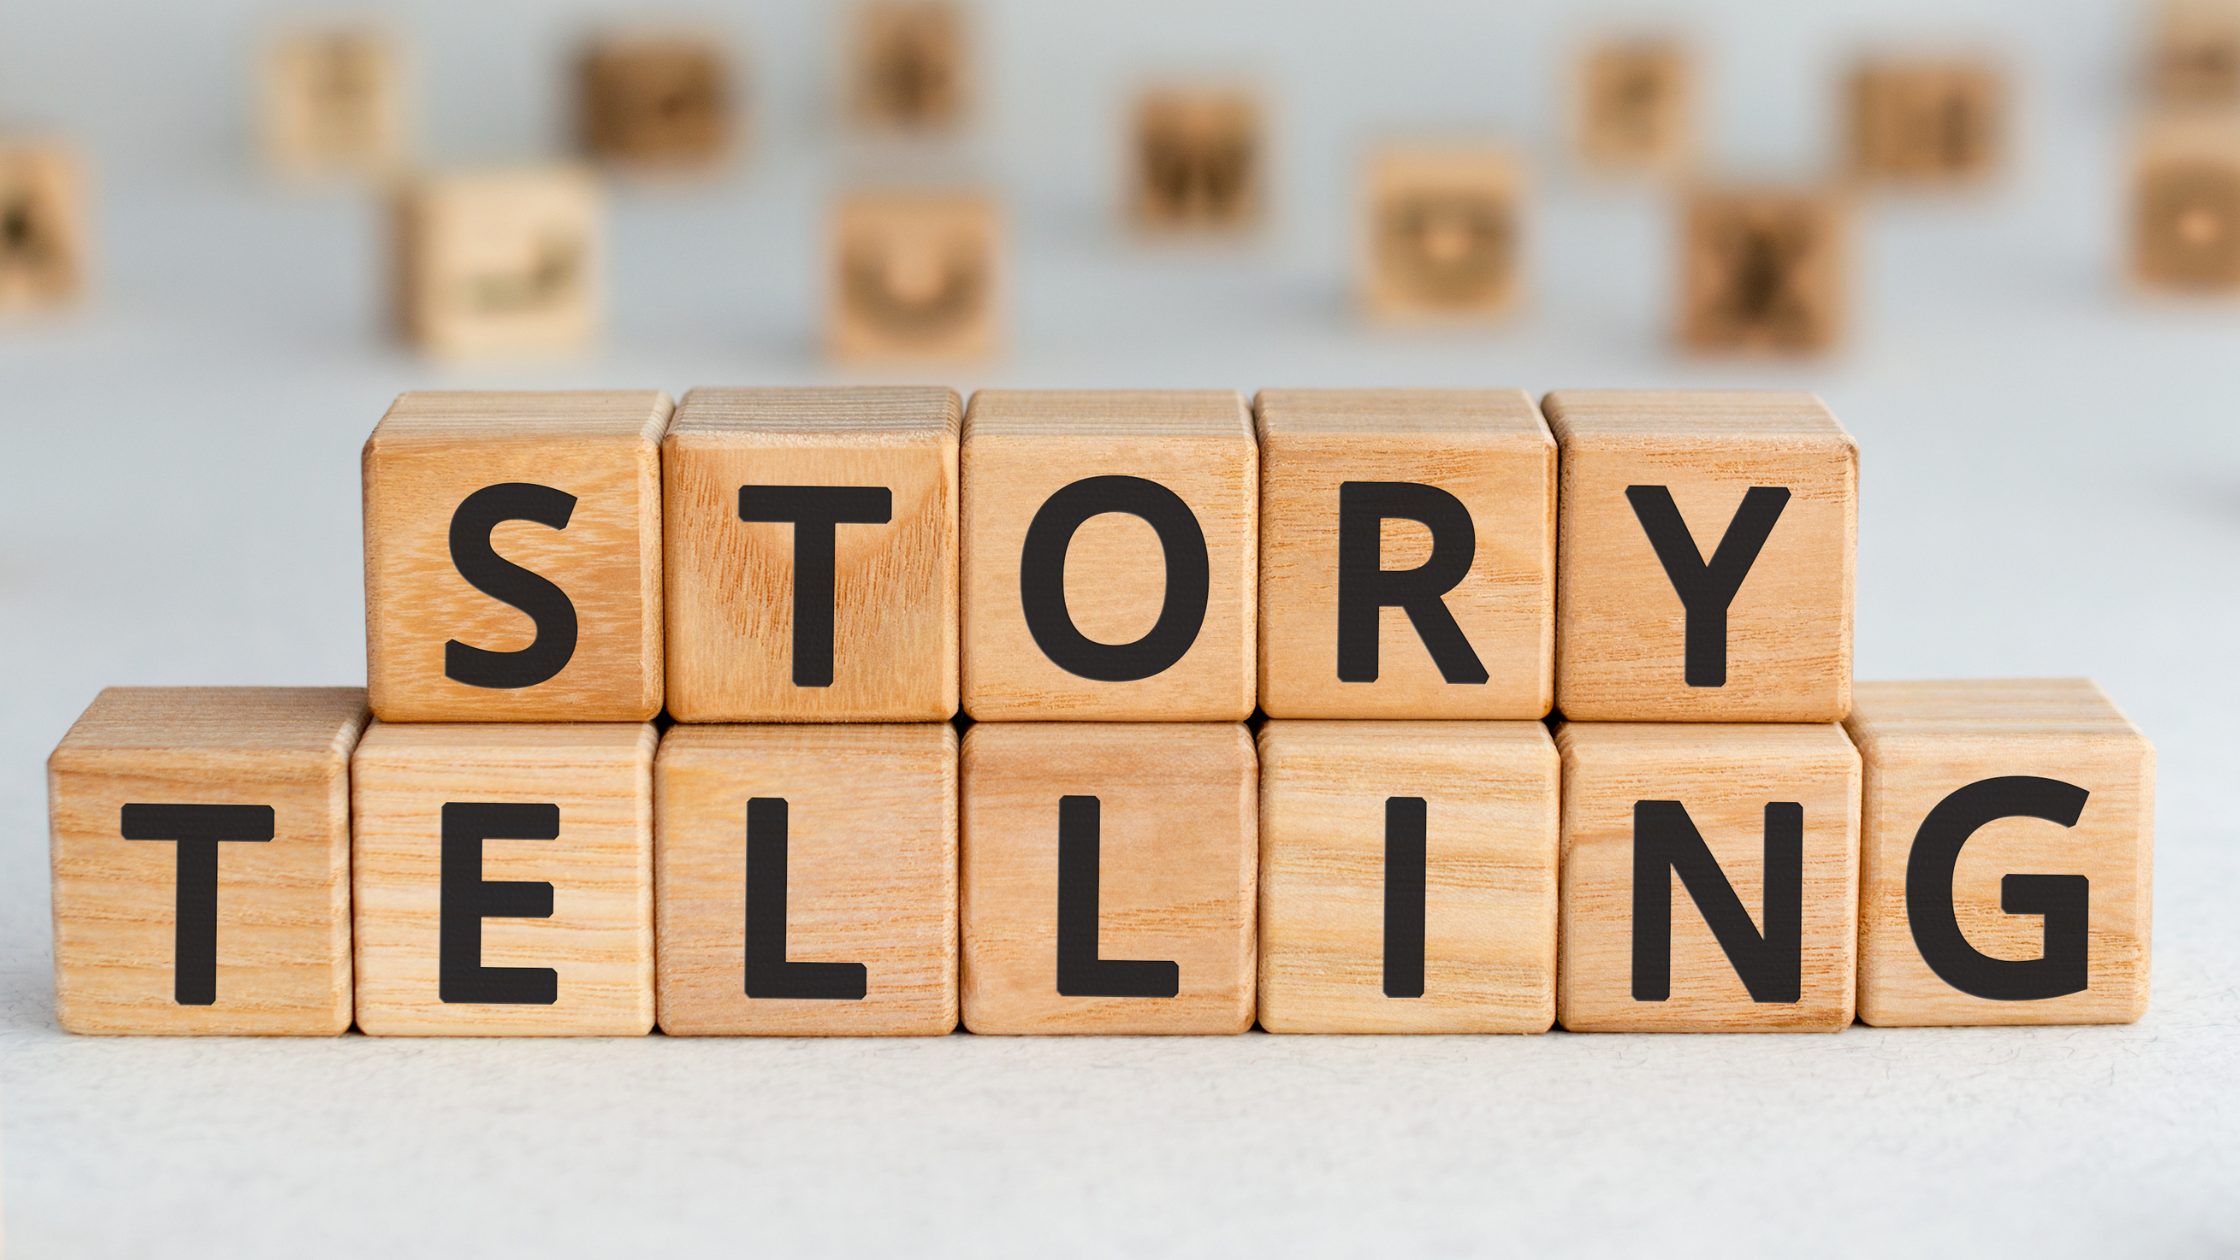 Descubra o papel do storytelling na comunicação para criar conexões mais fortes com o seu público e obter sucesso profissional